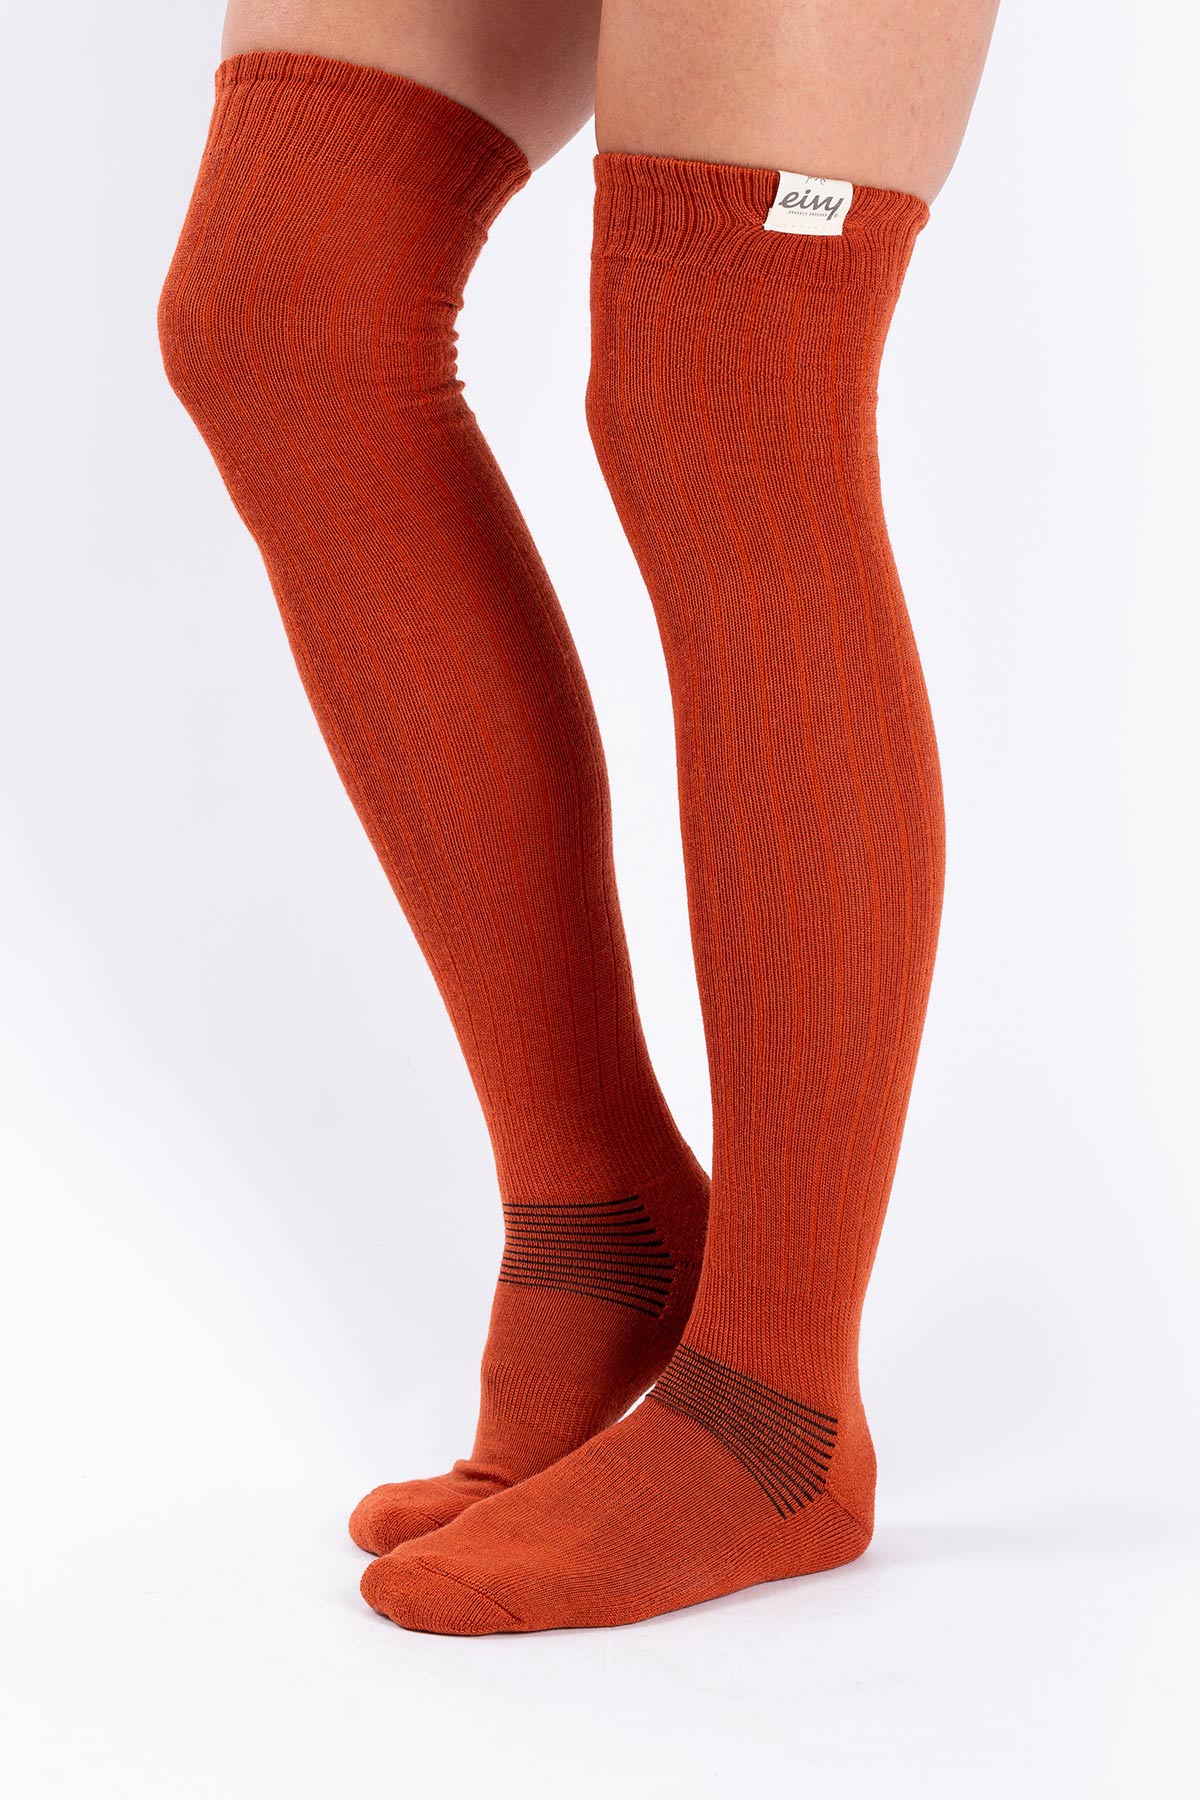 Socks | Rib High Wool - Rustic